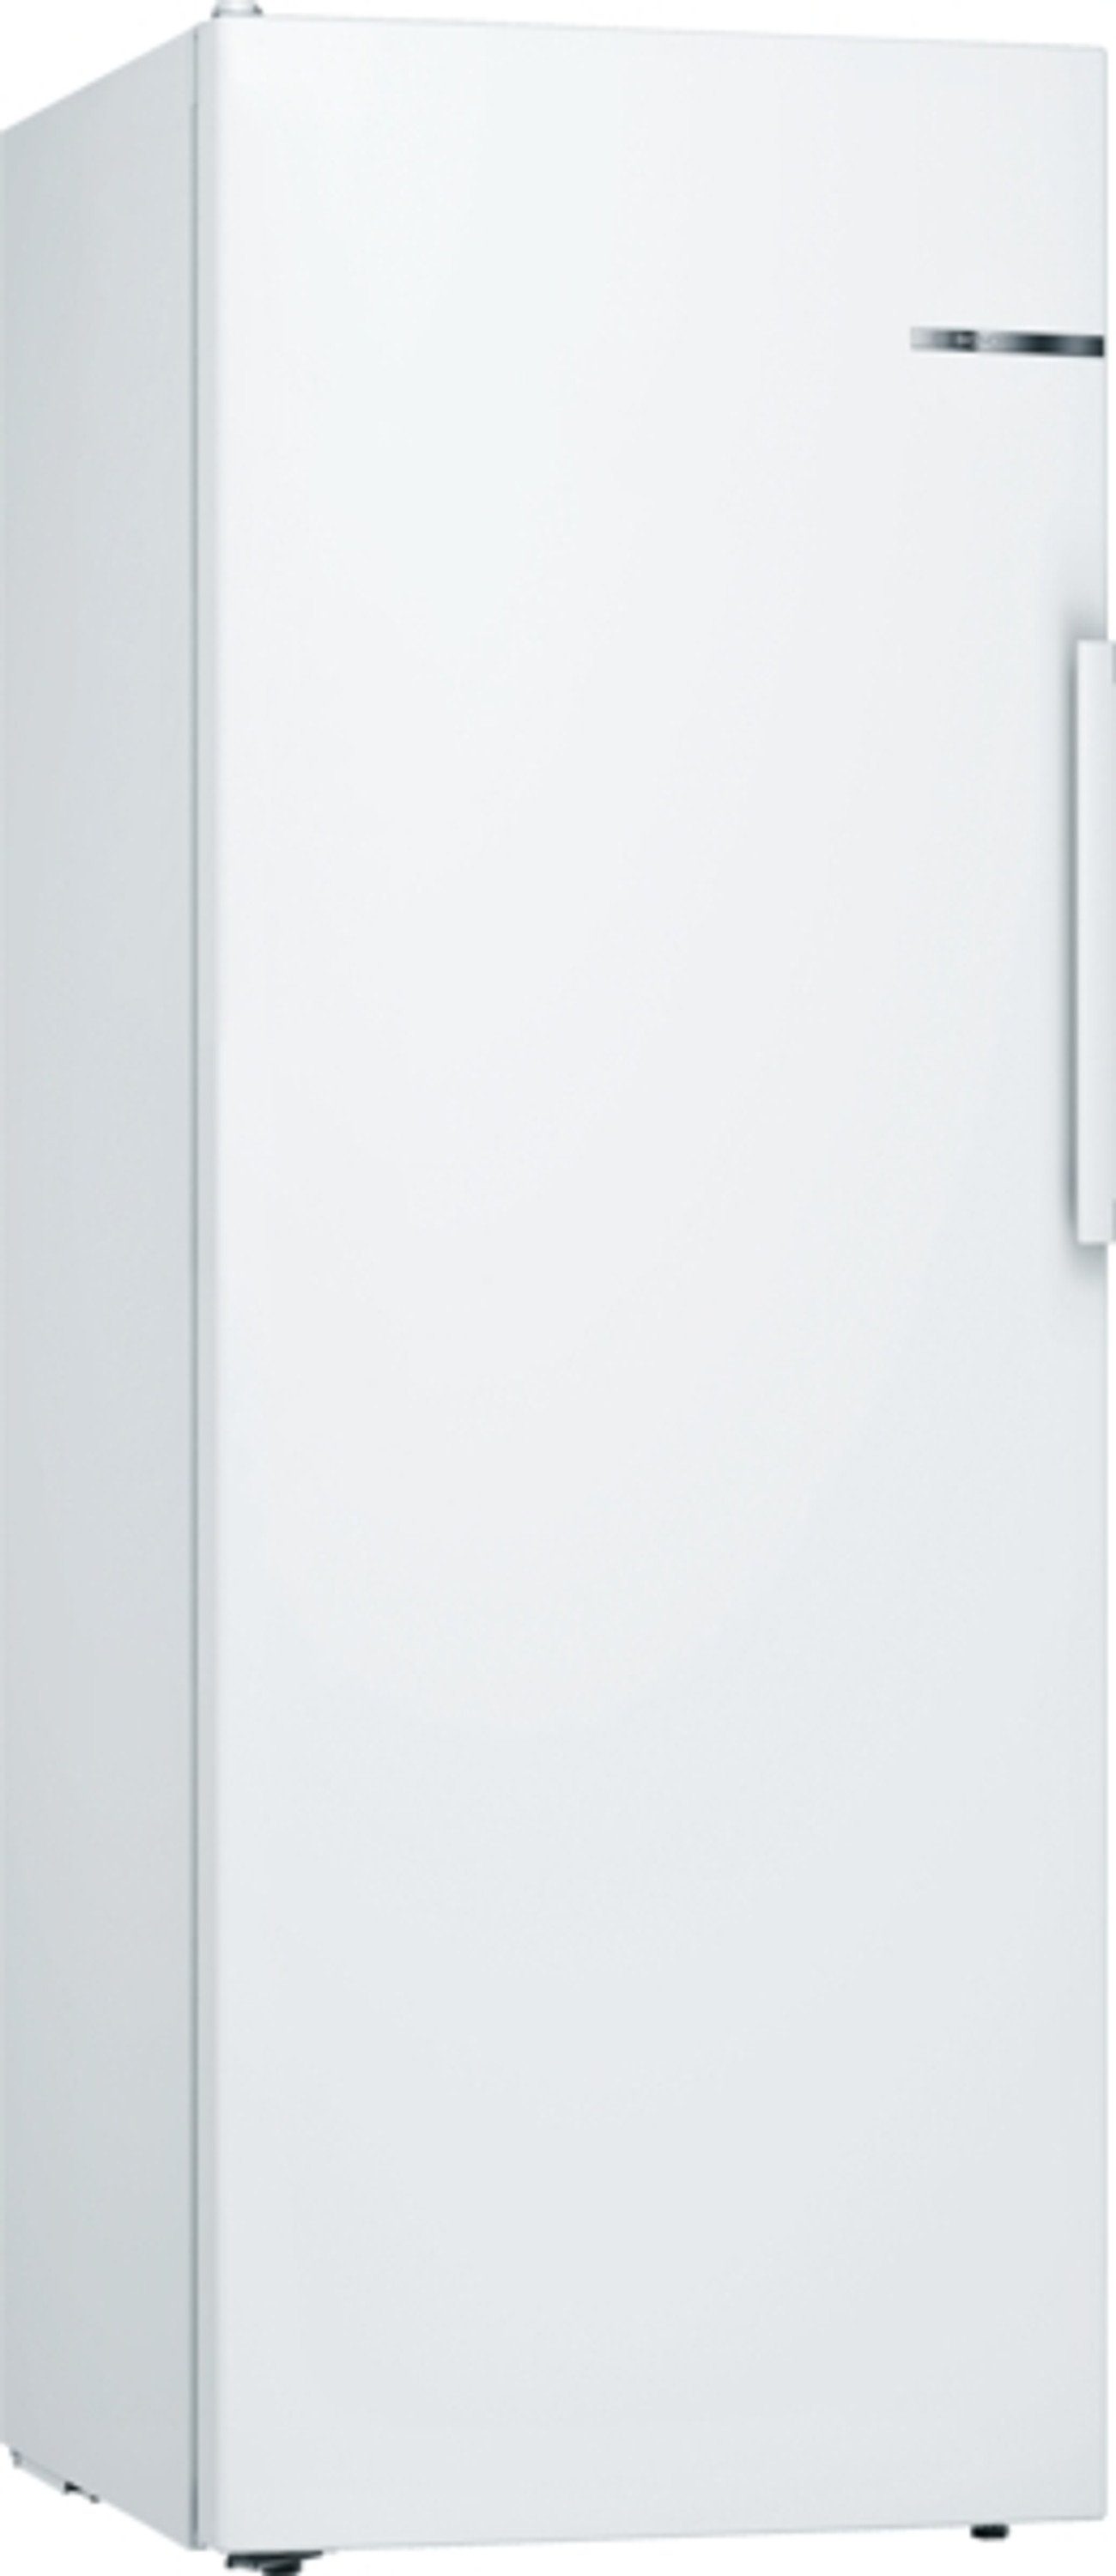 BOSCH Kühlschrank KSV29VWEP, 161 cm hoch, 60 cm breit